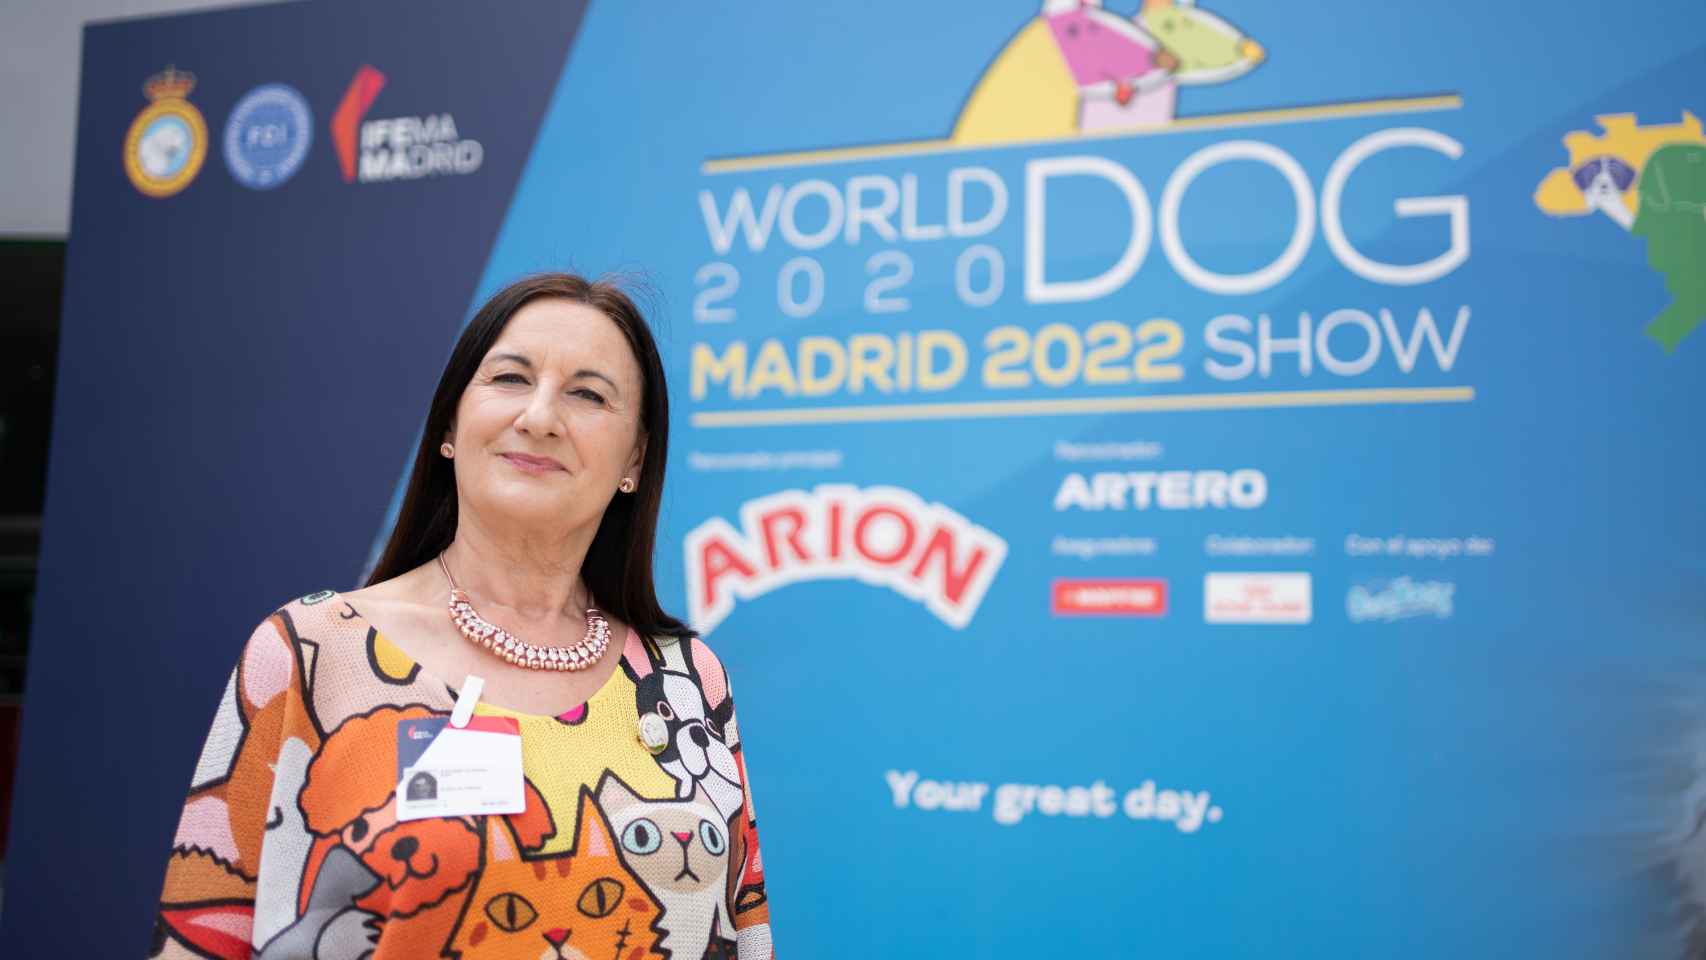 La jueza canina Carmen Navarro en la presentación del World Dog Show en IFEMA MADRID.